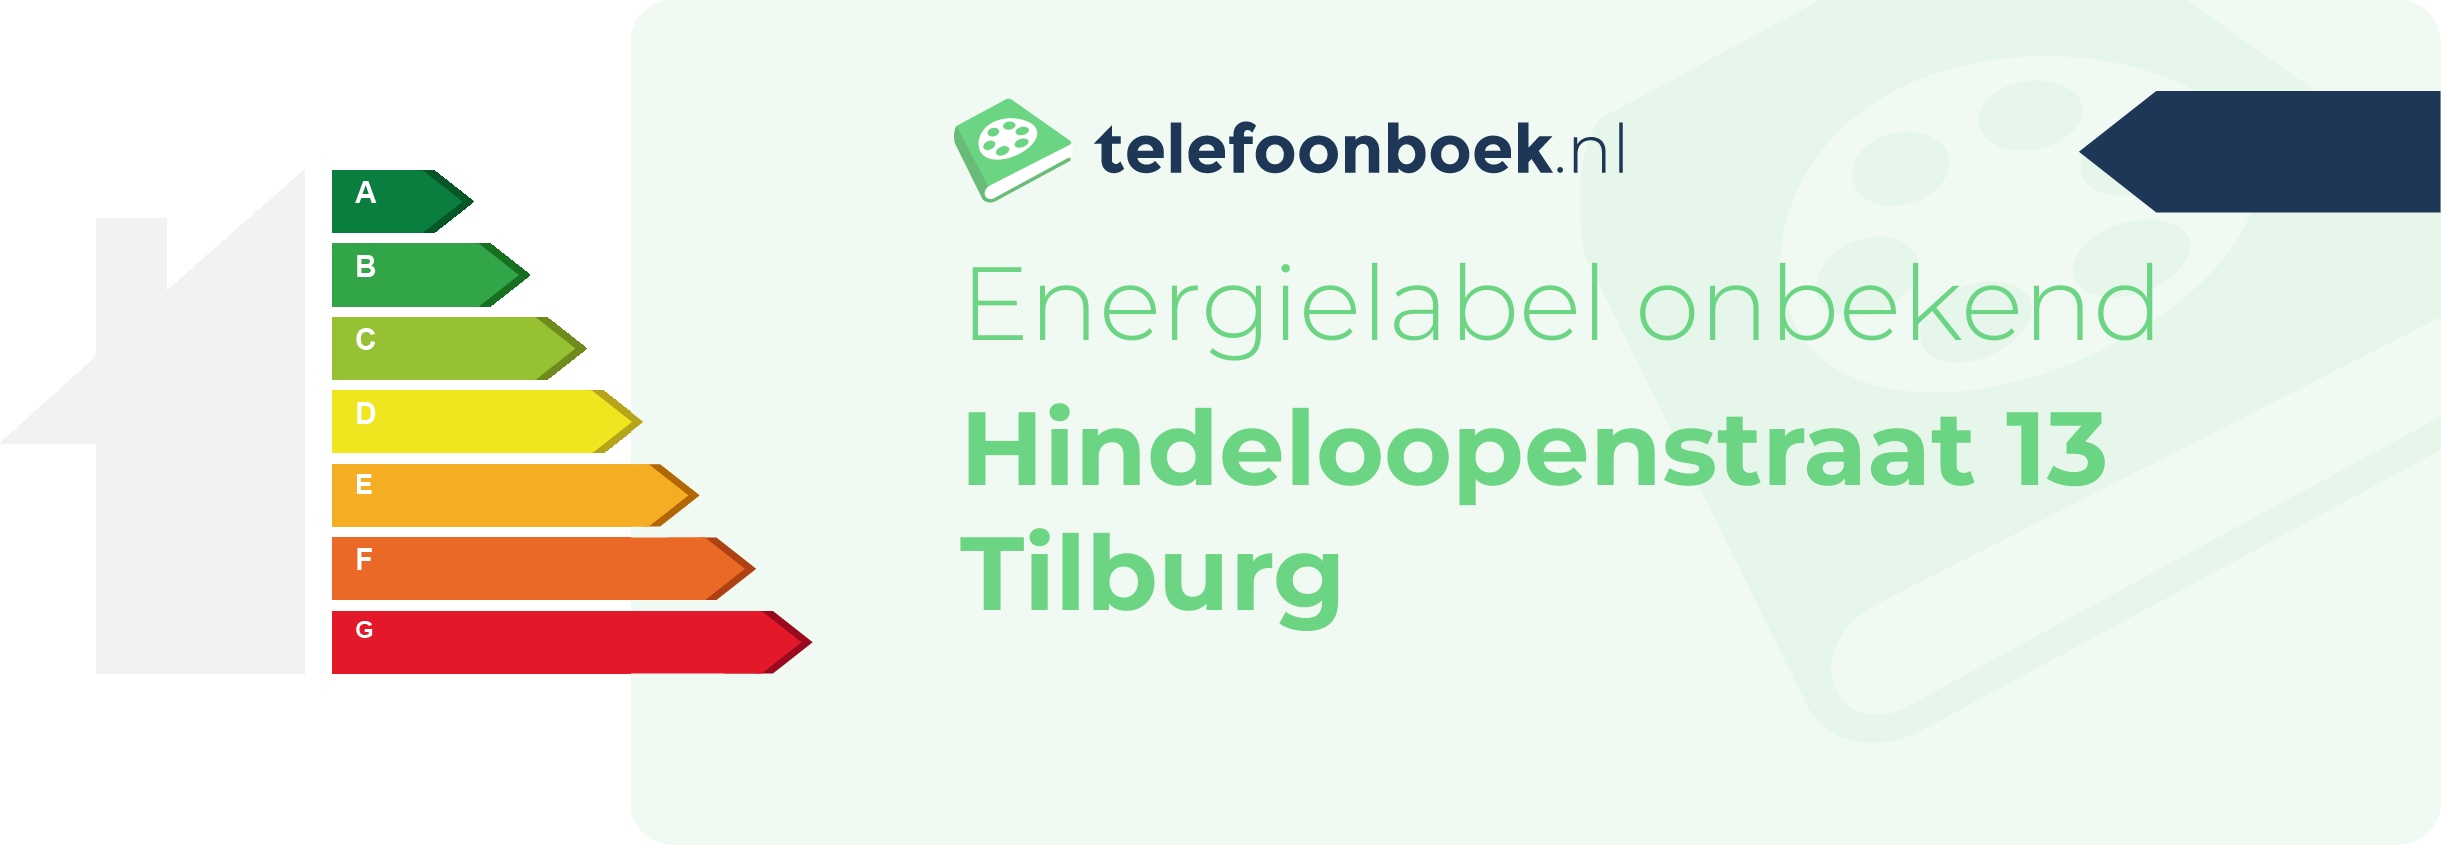 Energielabel Hindeloopenstraat 13 Tilburg